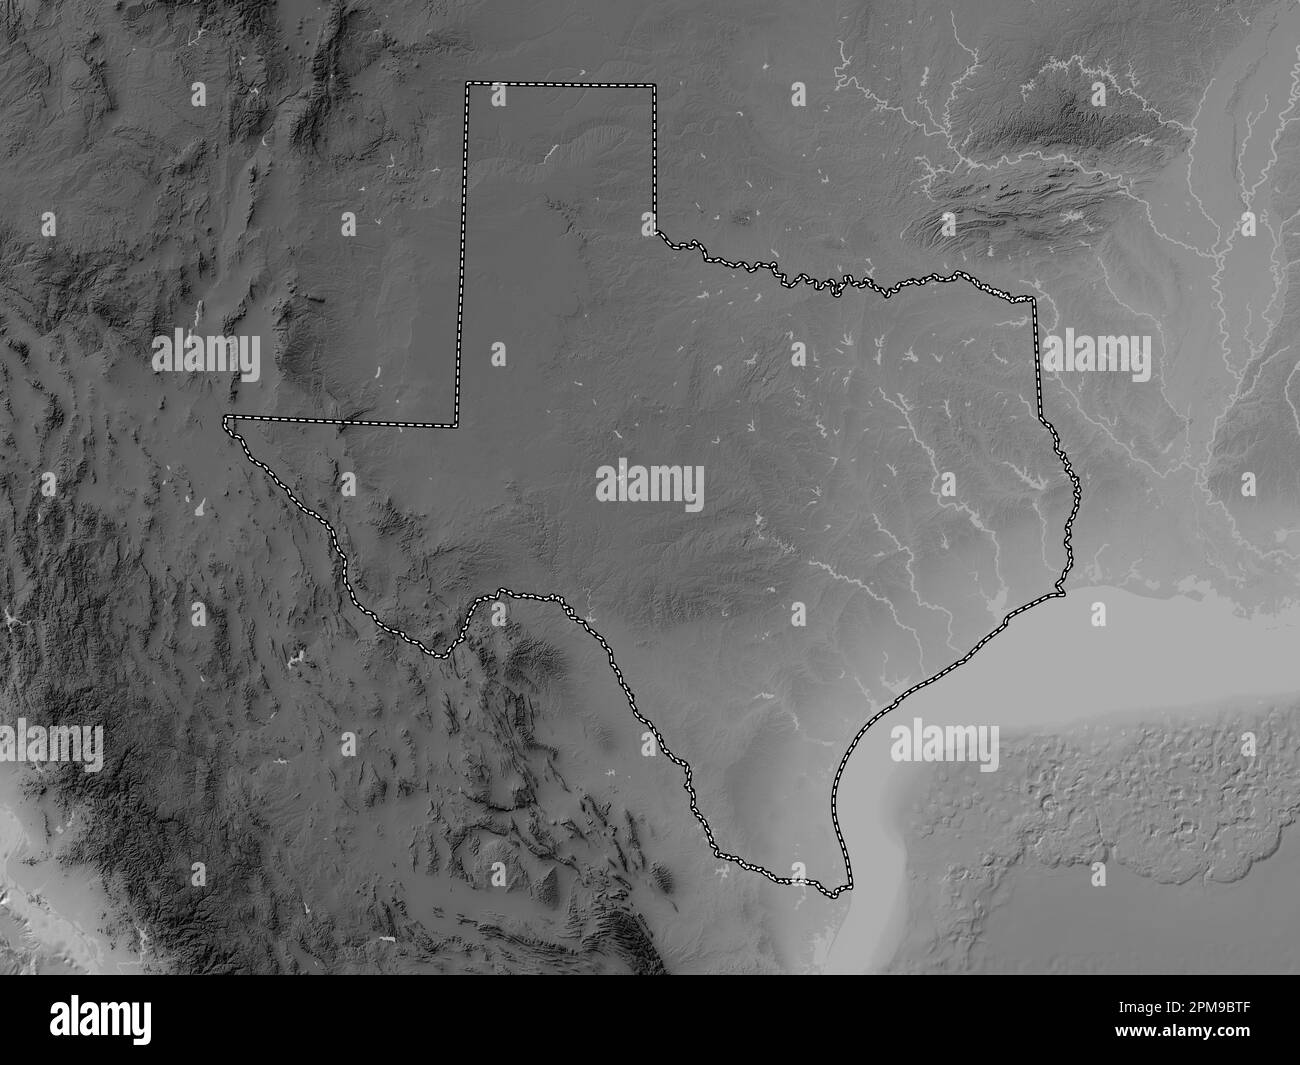 Texas, État des États-Unis d'Amérique. Carte d'altitude en niveaux de gris avec lacs et rivières Banque D'Images